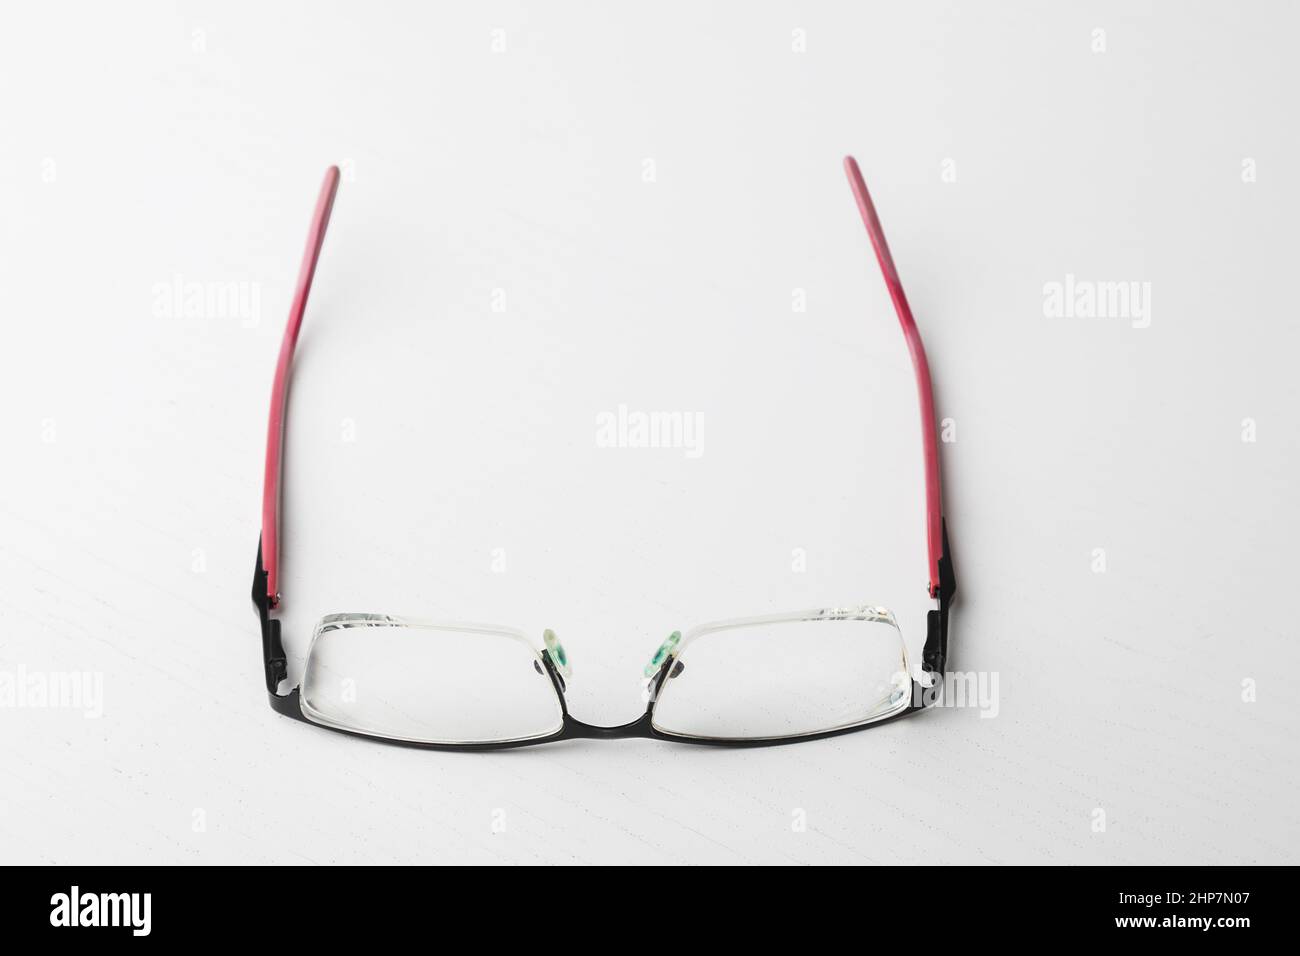 Les lunettes dépliées se trouvent sur une table blanche. Banque D'Images